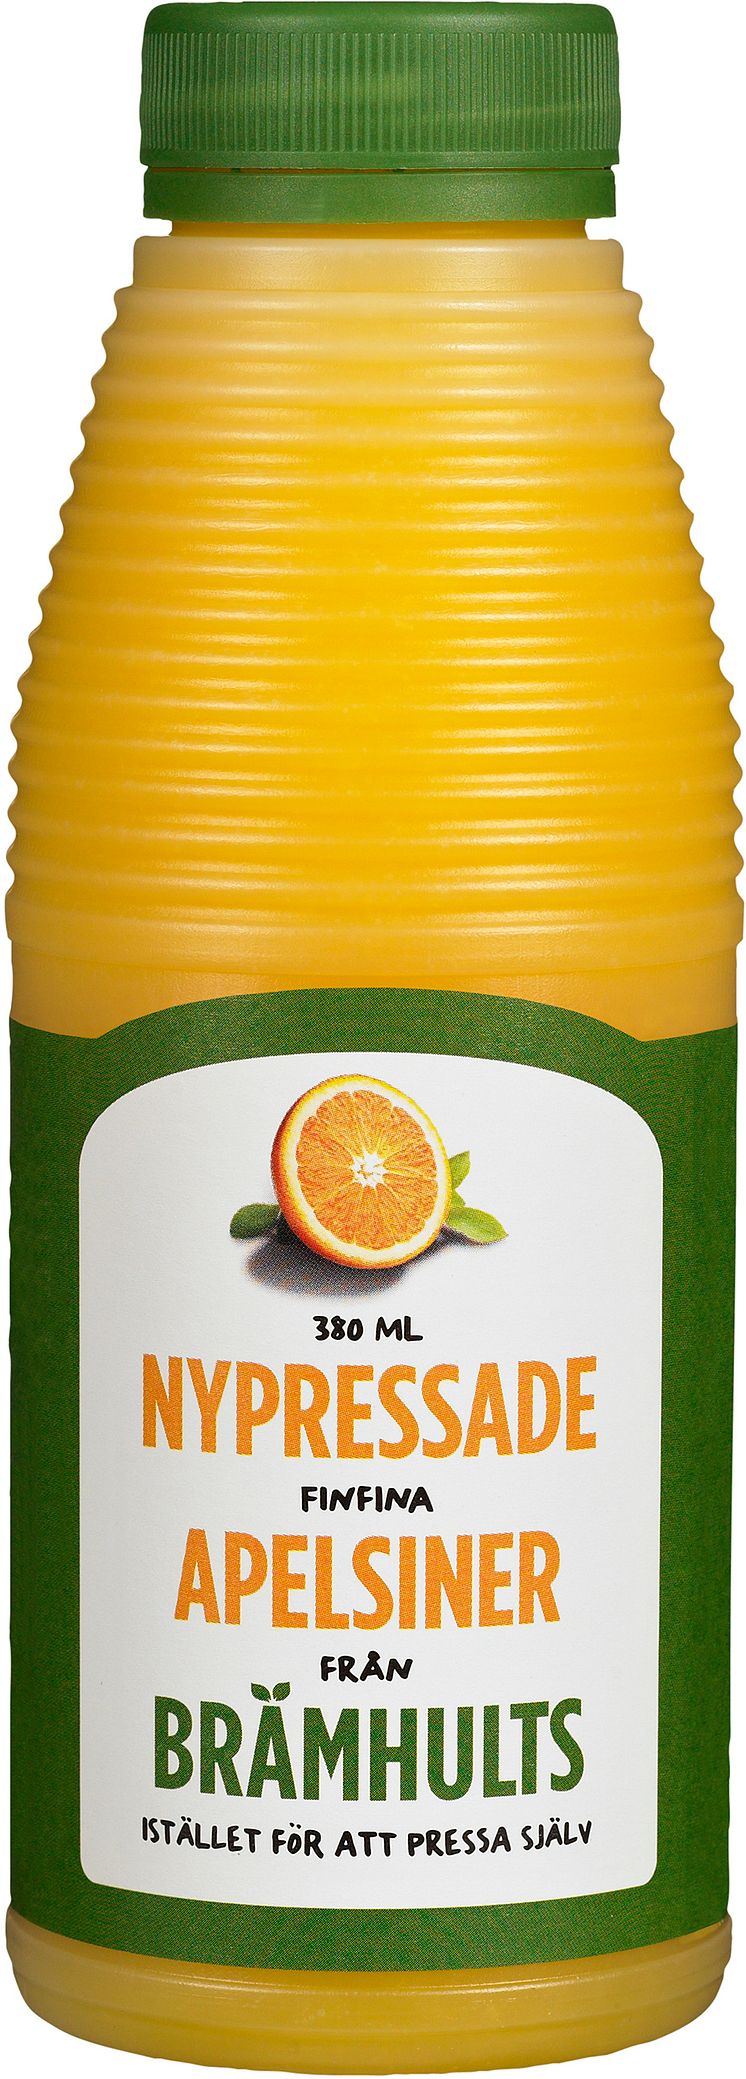 Nypressade apelsiner 380 ml